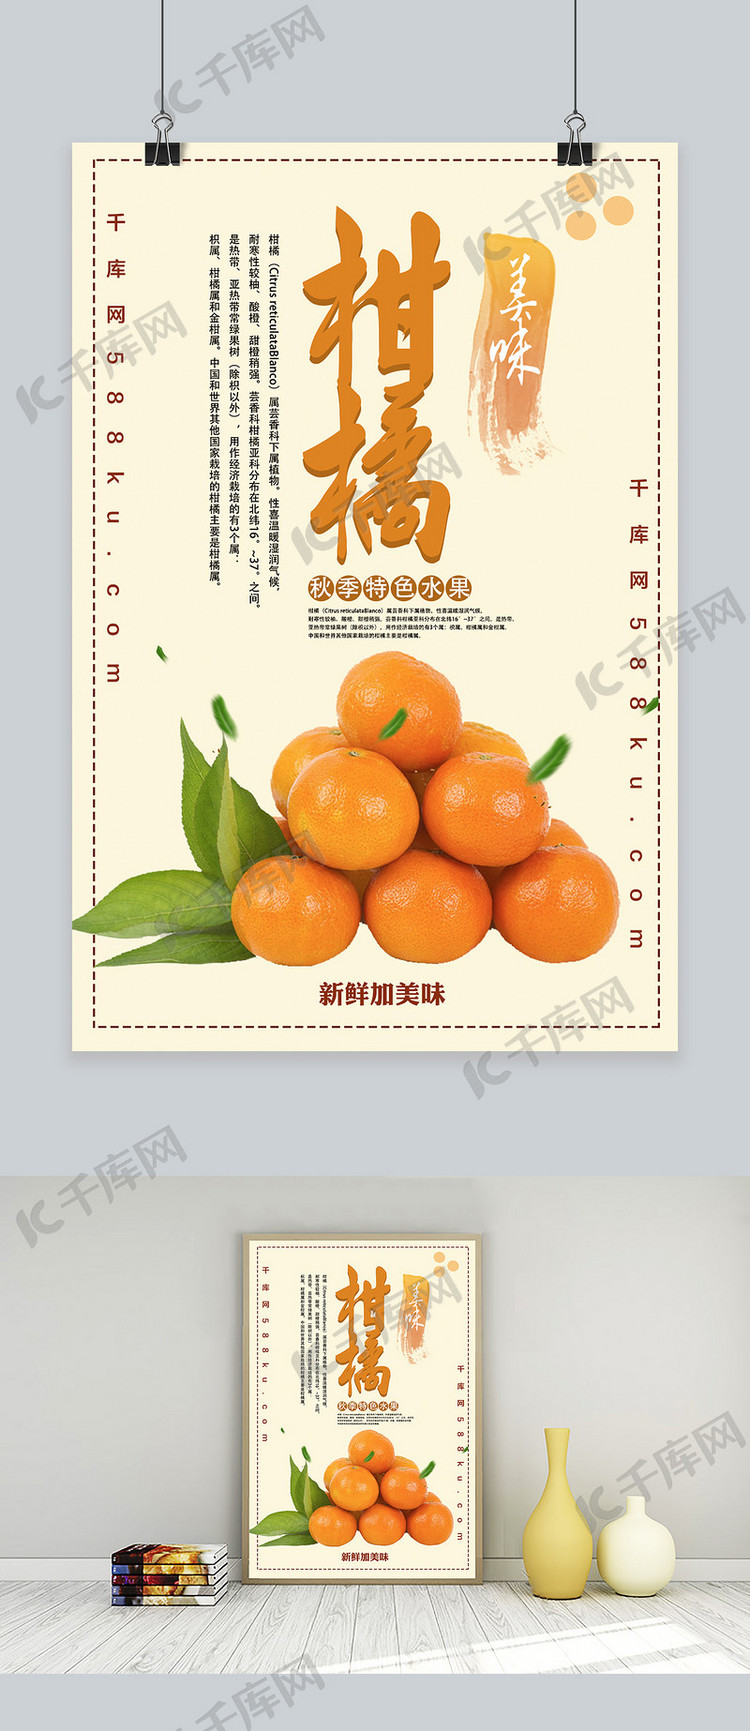 美味柑橘秋季水果促销海报